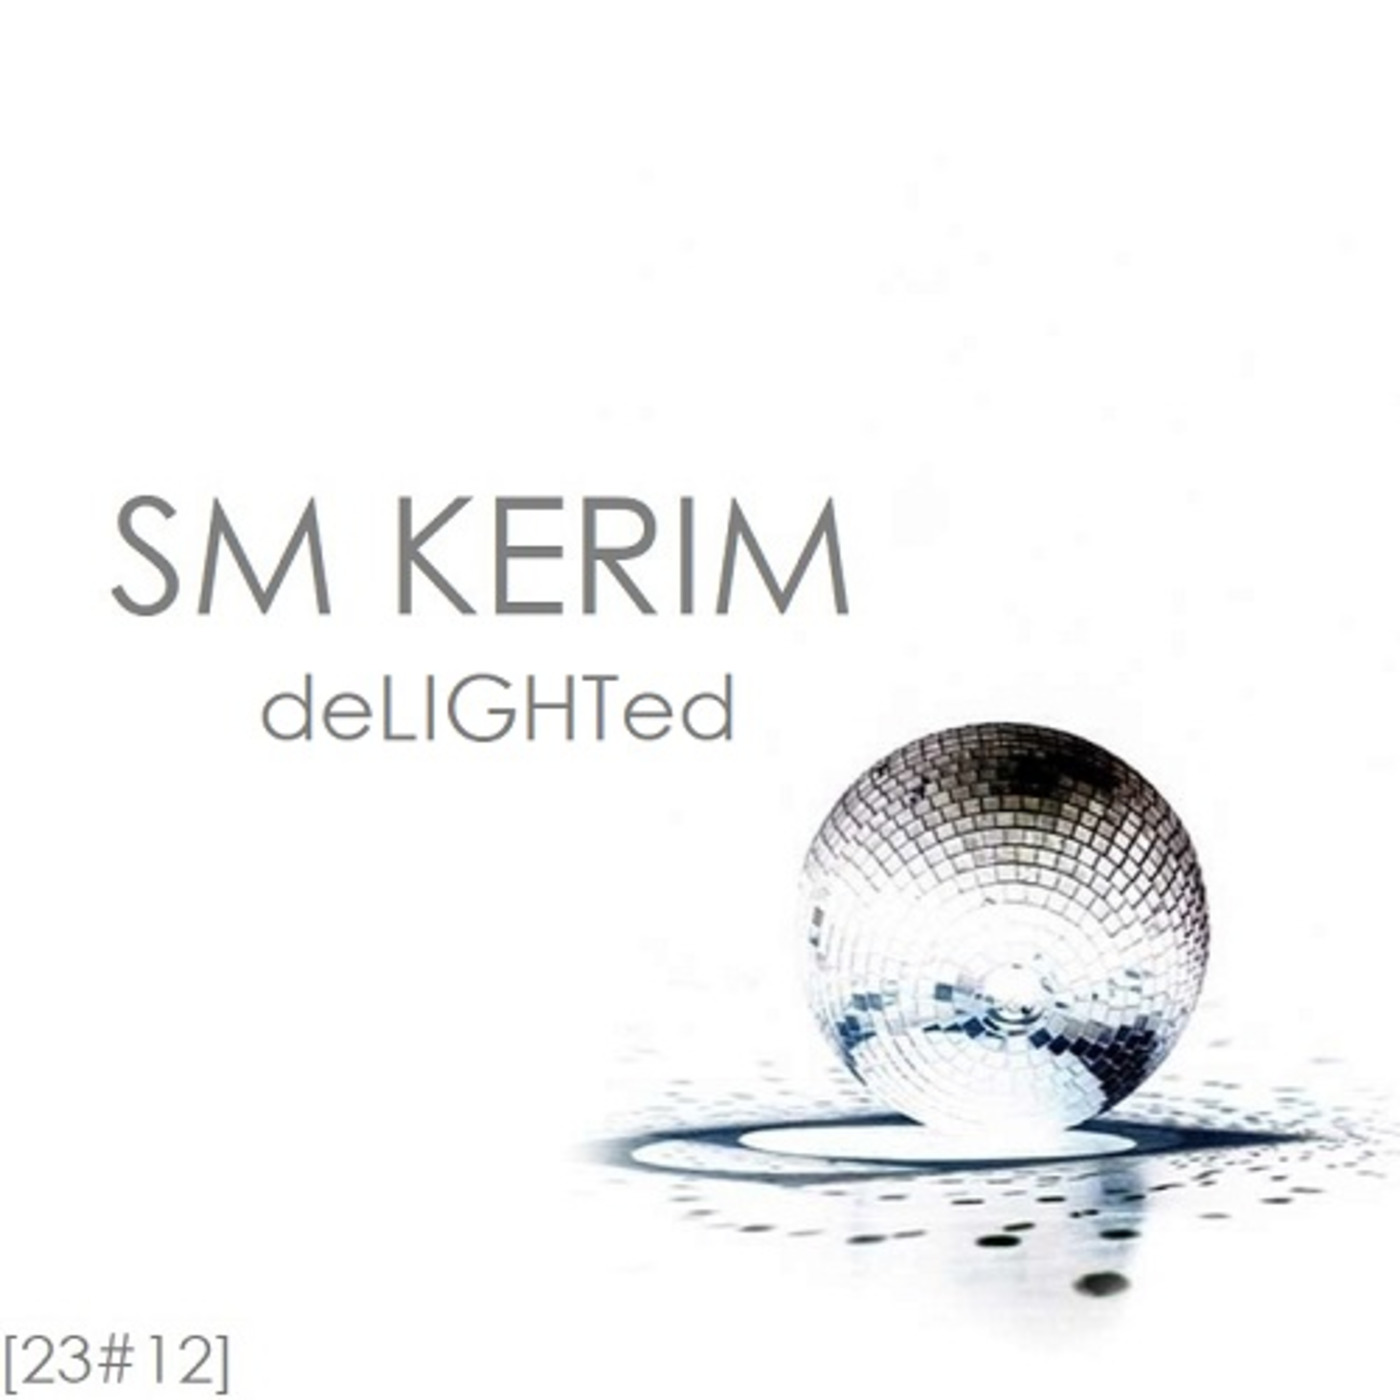 SM KERIM - deLIGHTed (23#12)